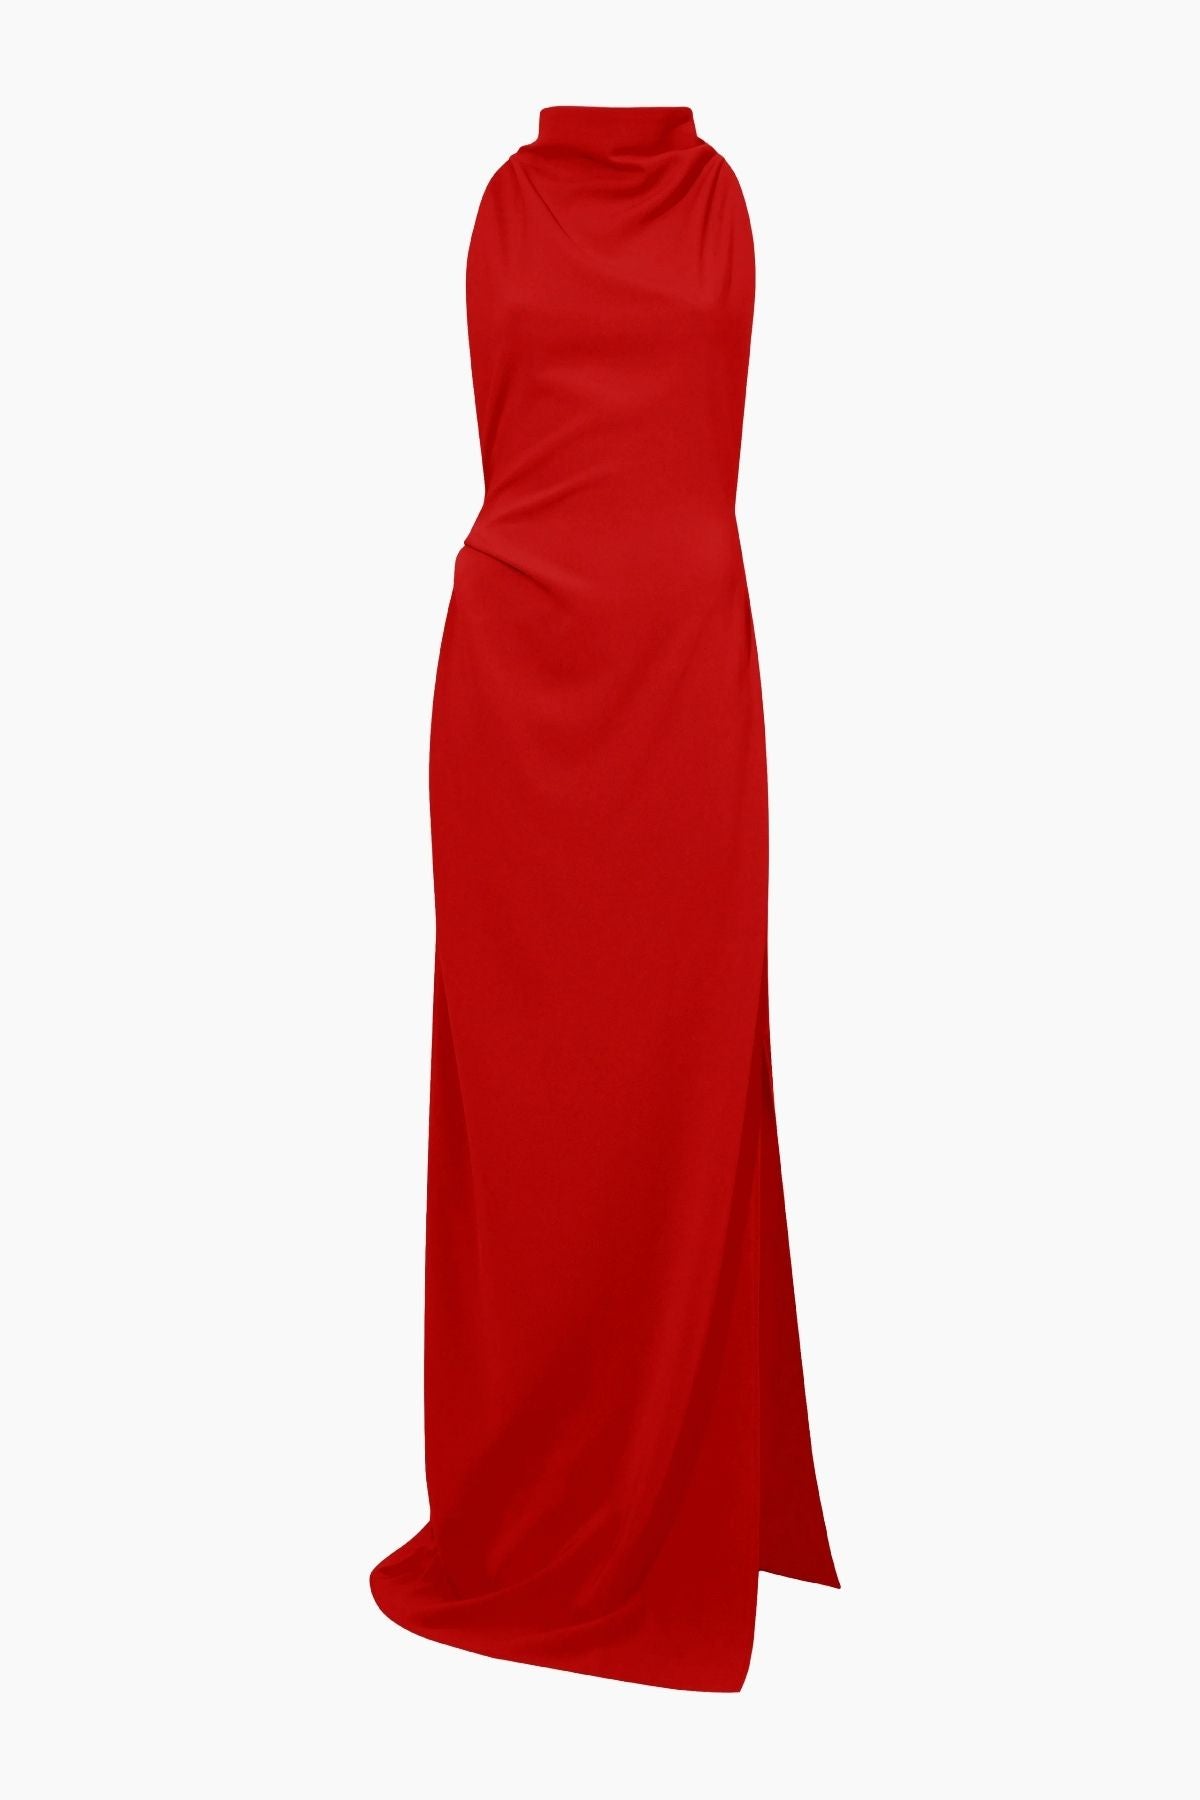 Proenza Schouler Faye Backless Twist Back Dress - Red